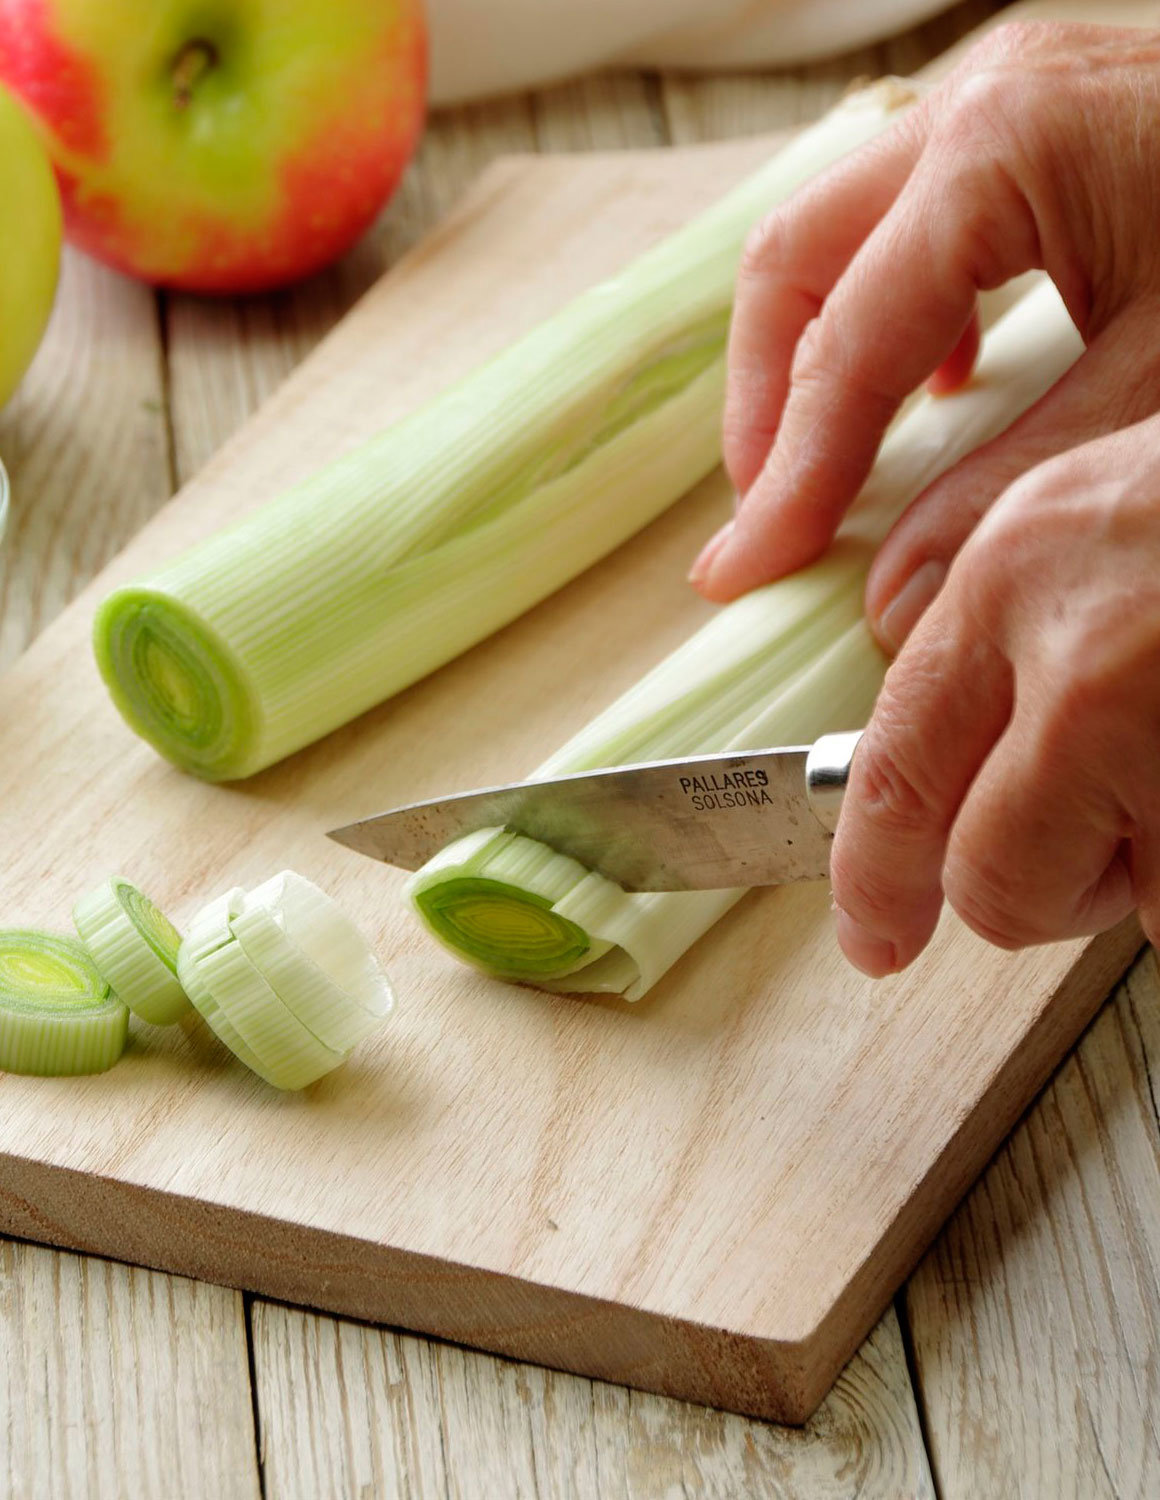 1. Prepara las verduras